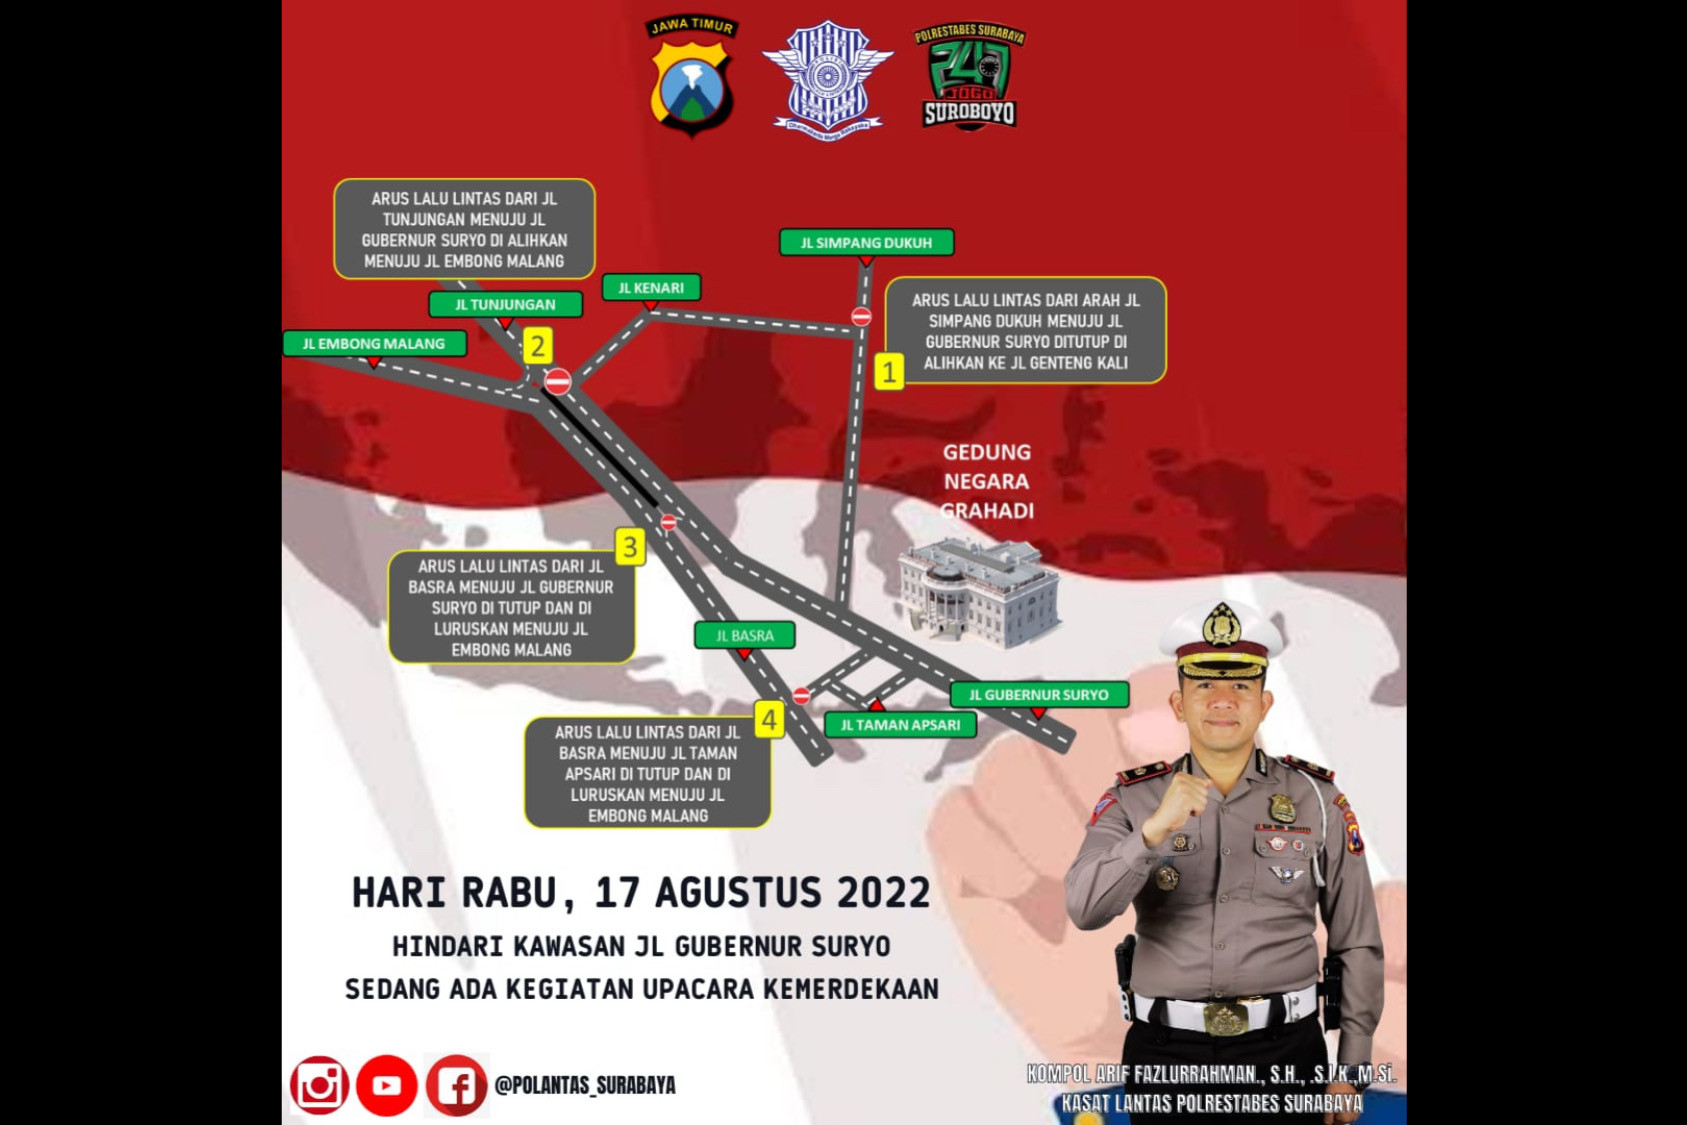 Besok, Jalan Gubernur Suryo Surabaya Bakal Ditutup, Ini Pengalihan Arus Lalu Lintasnya - JPNN.com Jatim